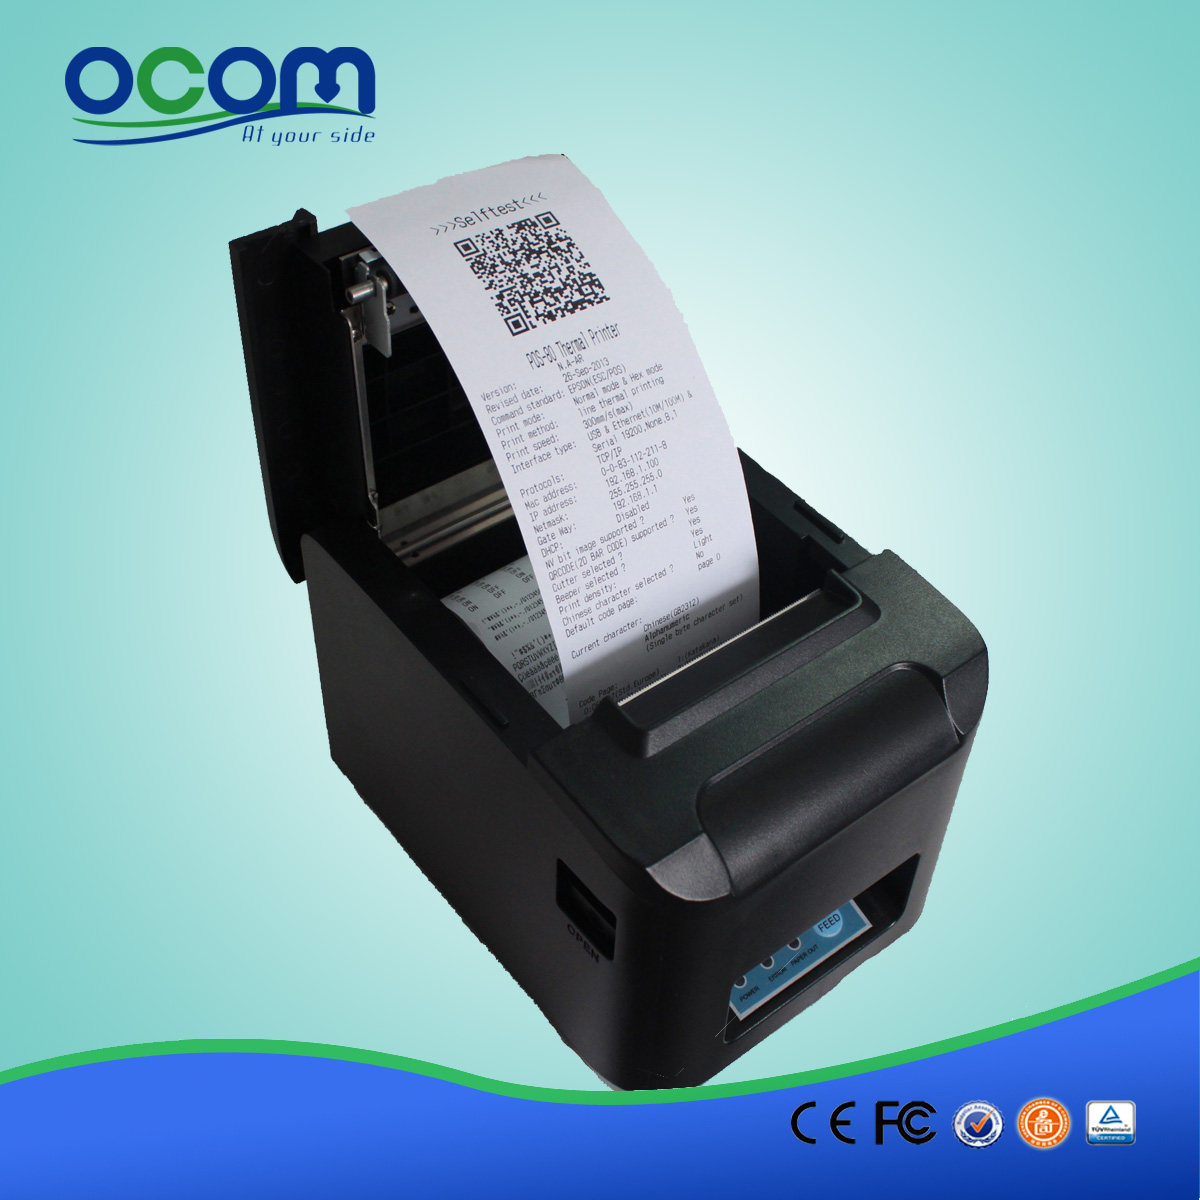 OCPP-808-URL del cortador automático Ethernet POS impresora térmica de recibos